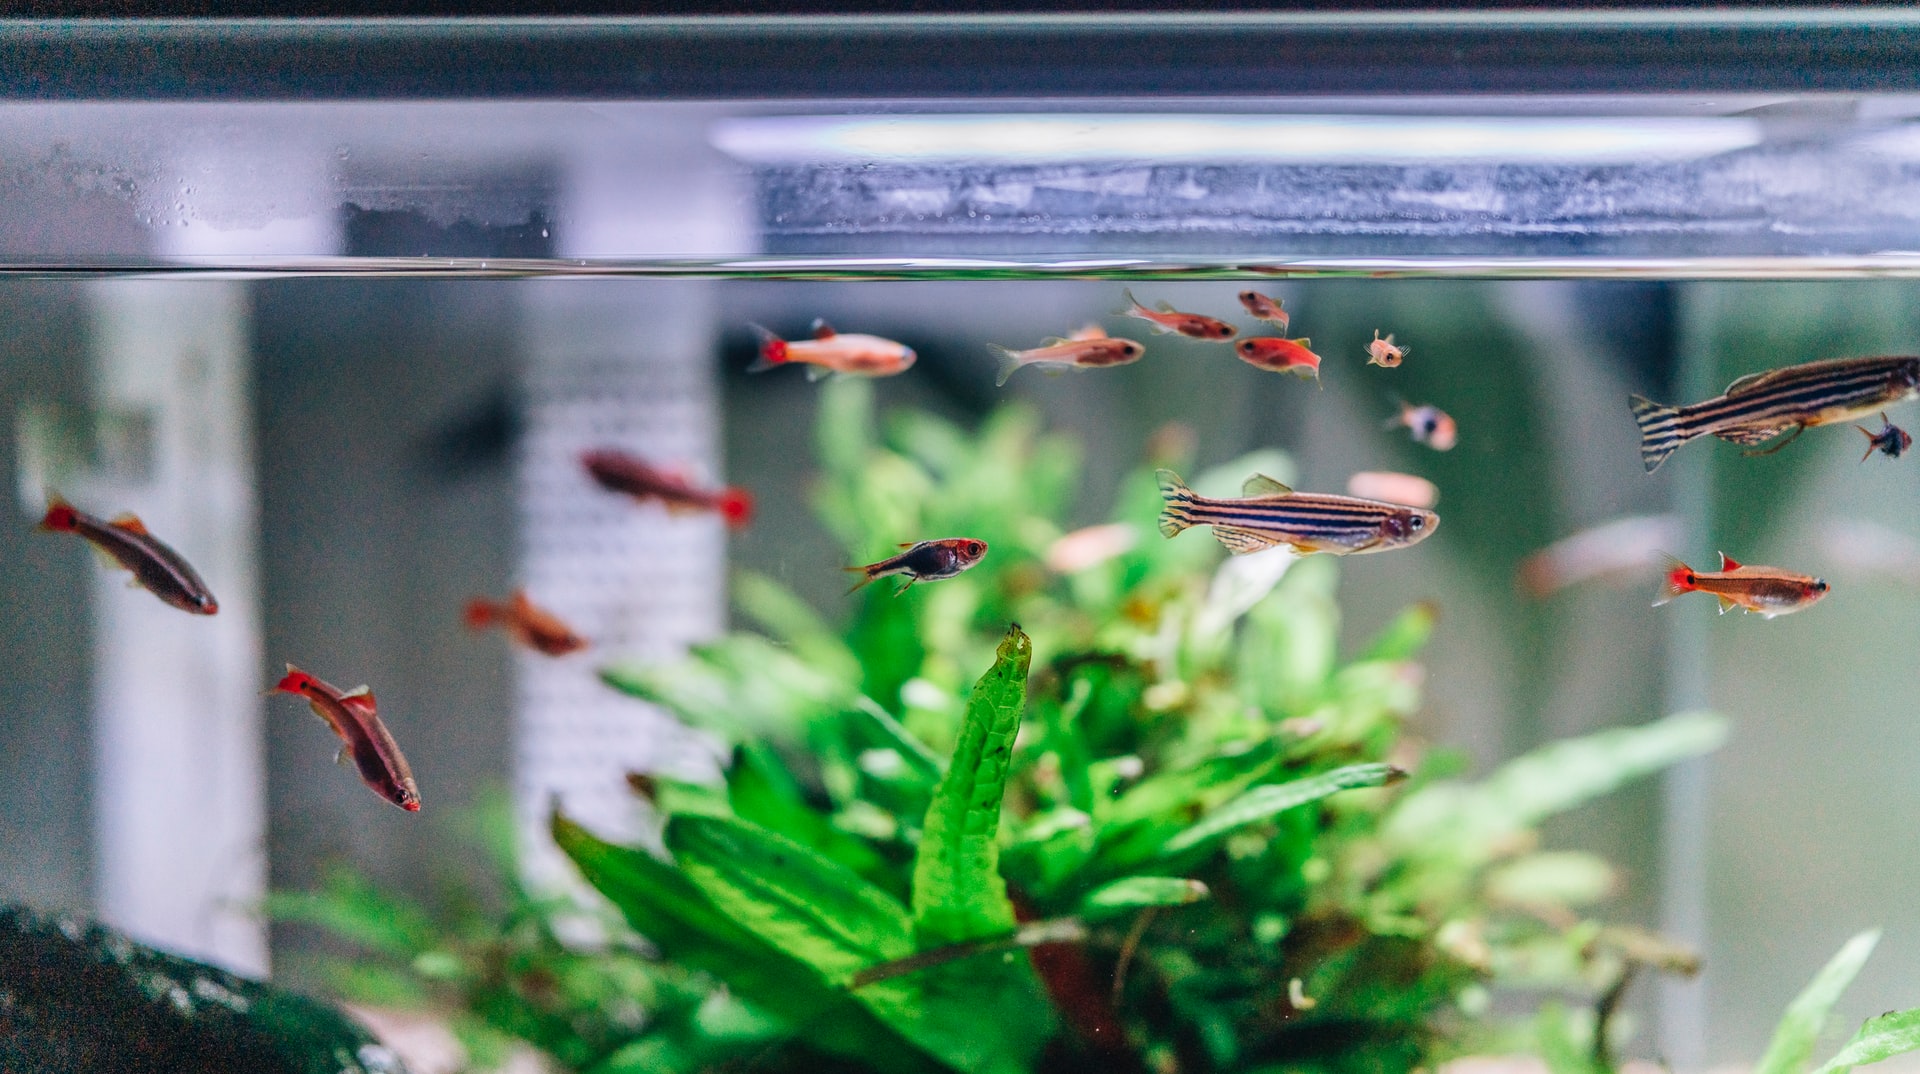 in-home aquarium ideas